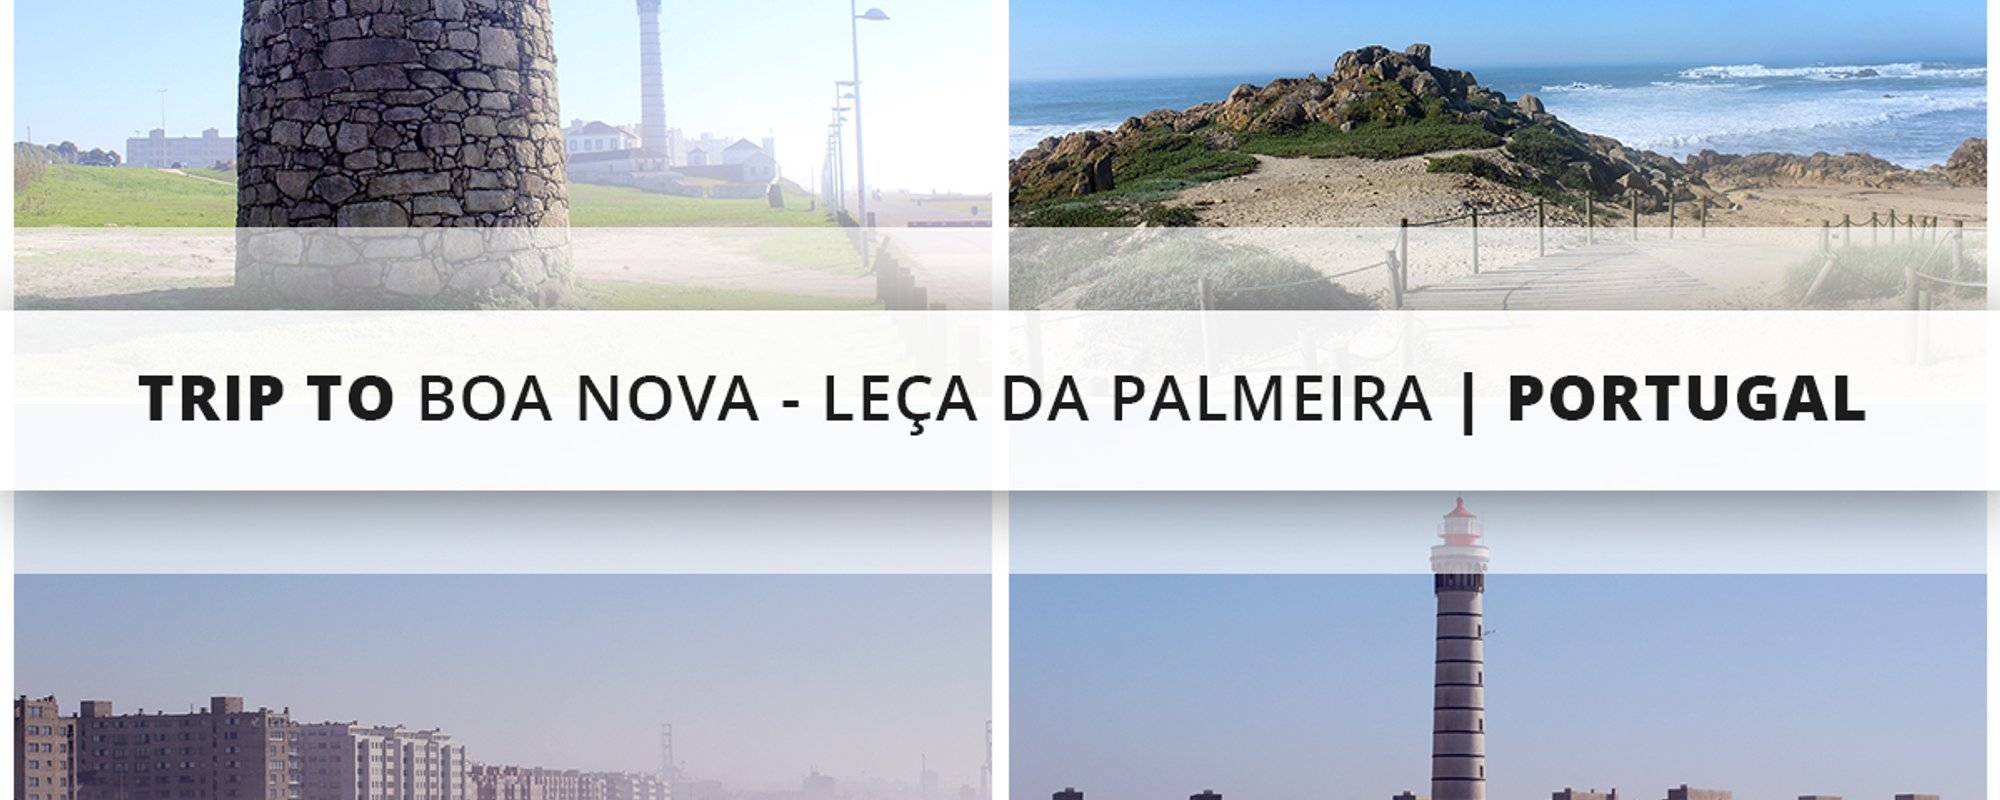 Trip to Boa Nova - Leça da Palmeira | Portugal